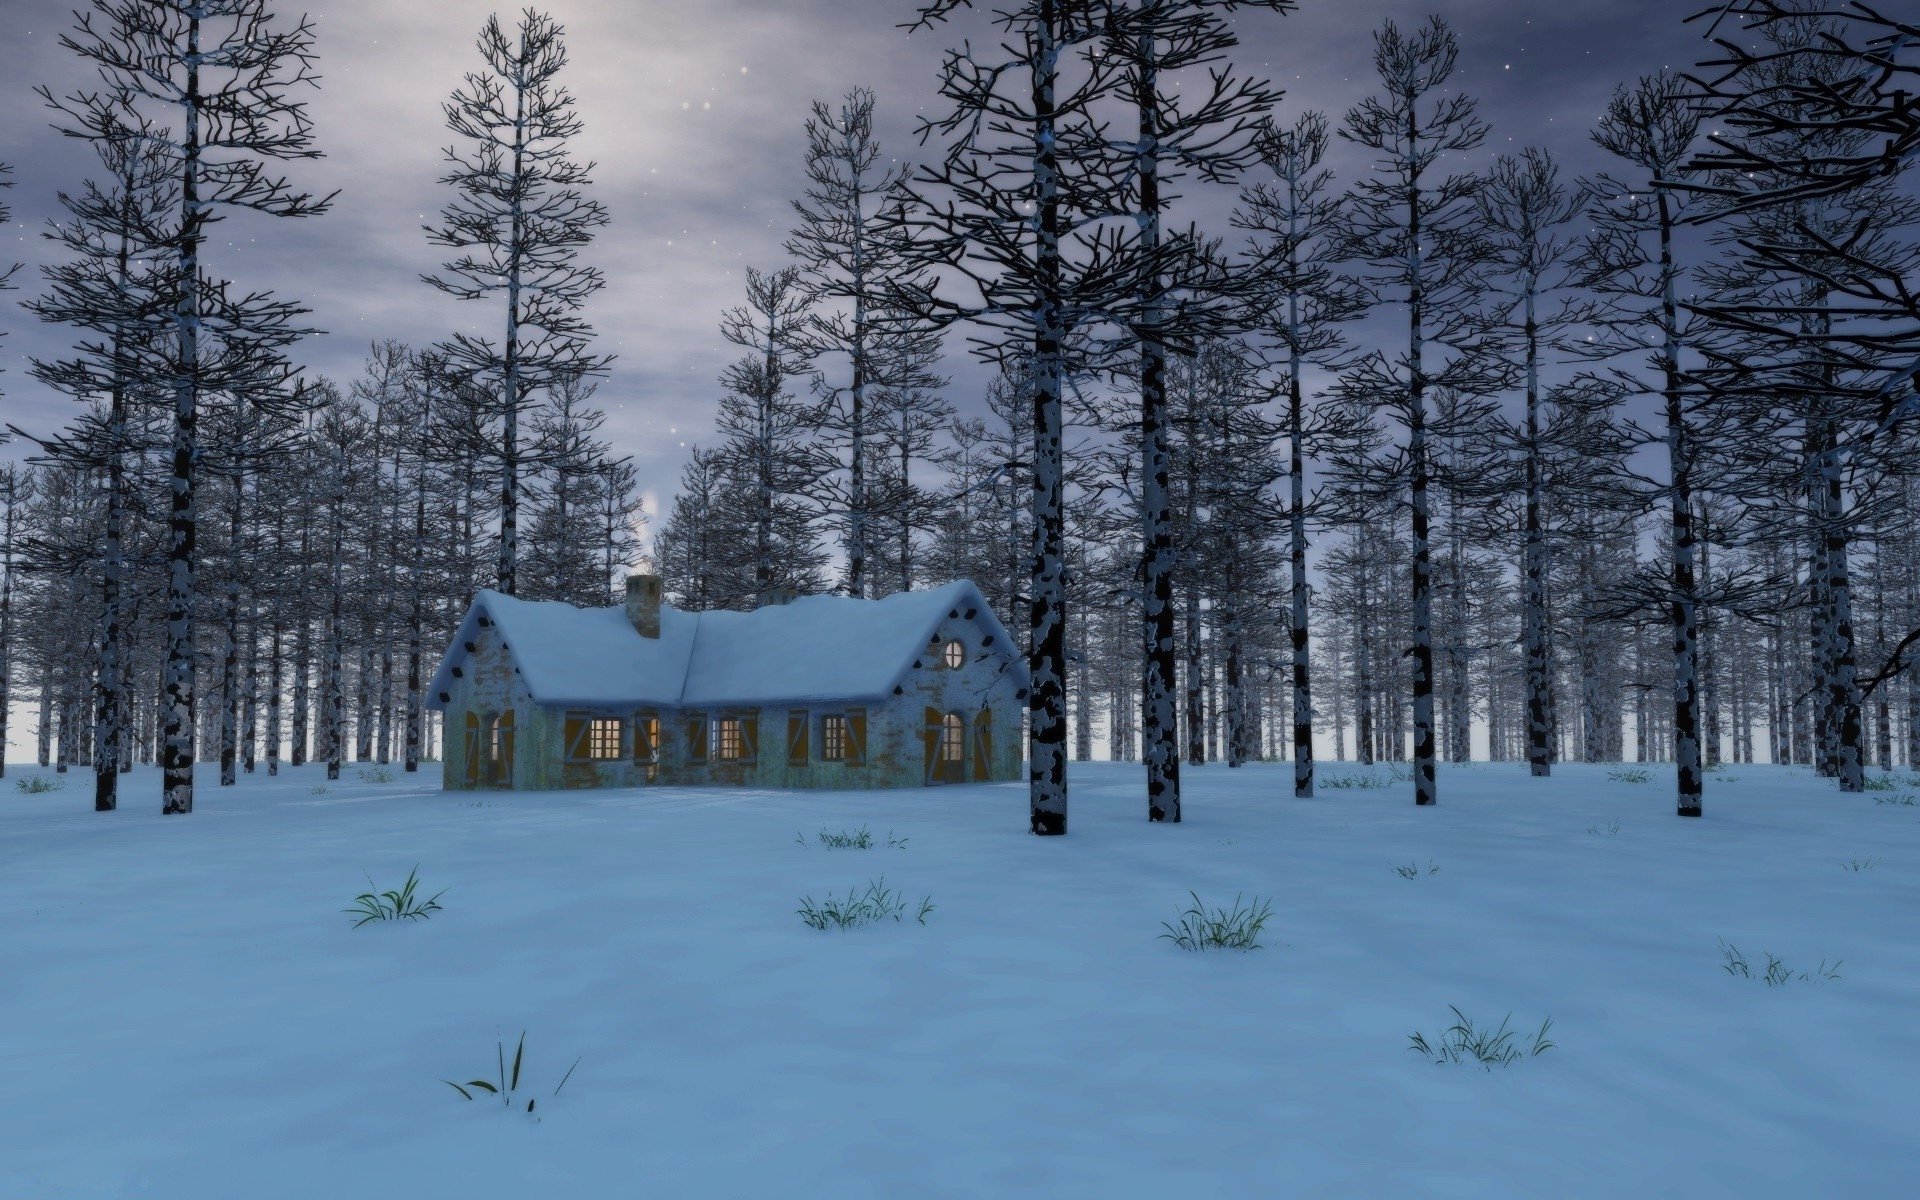 Descarga gratuita de fondo de pantalla para móvil de Invierno, Nieve, Bosque, Árbol, Casa, Oscuridad, Artístico.